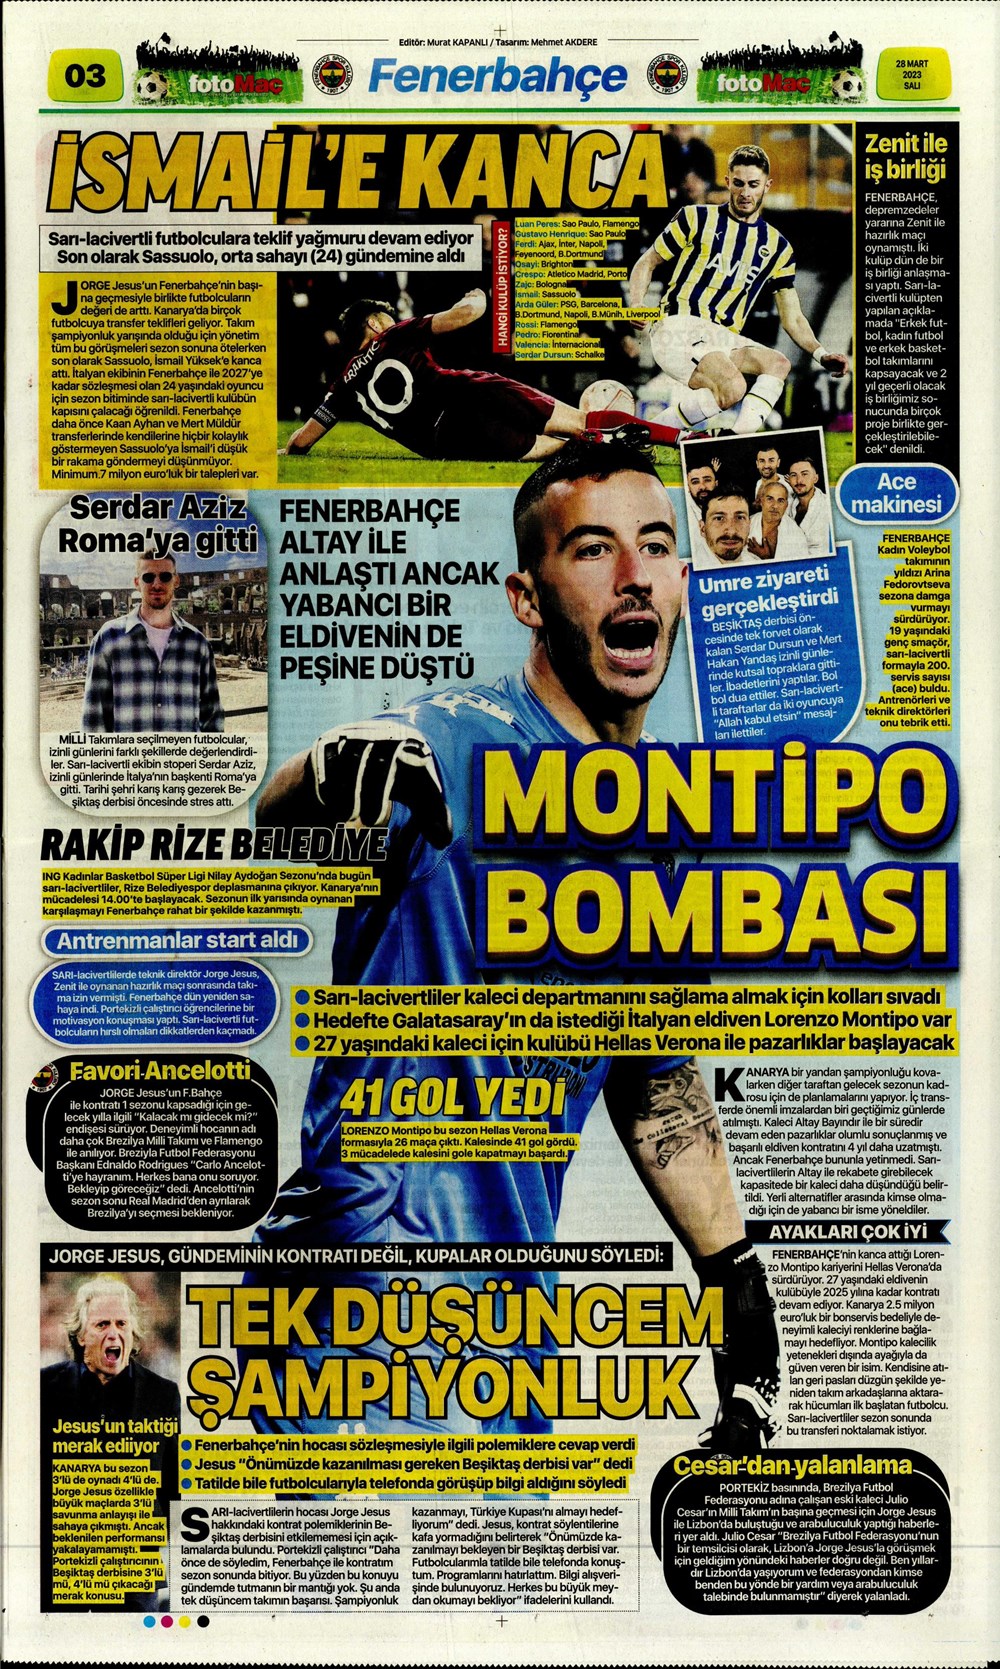 "Vurduğumuz gol olsun" - Sporun manşetleri - 11. Foto